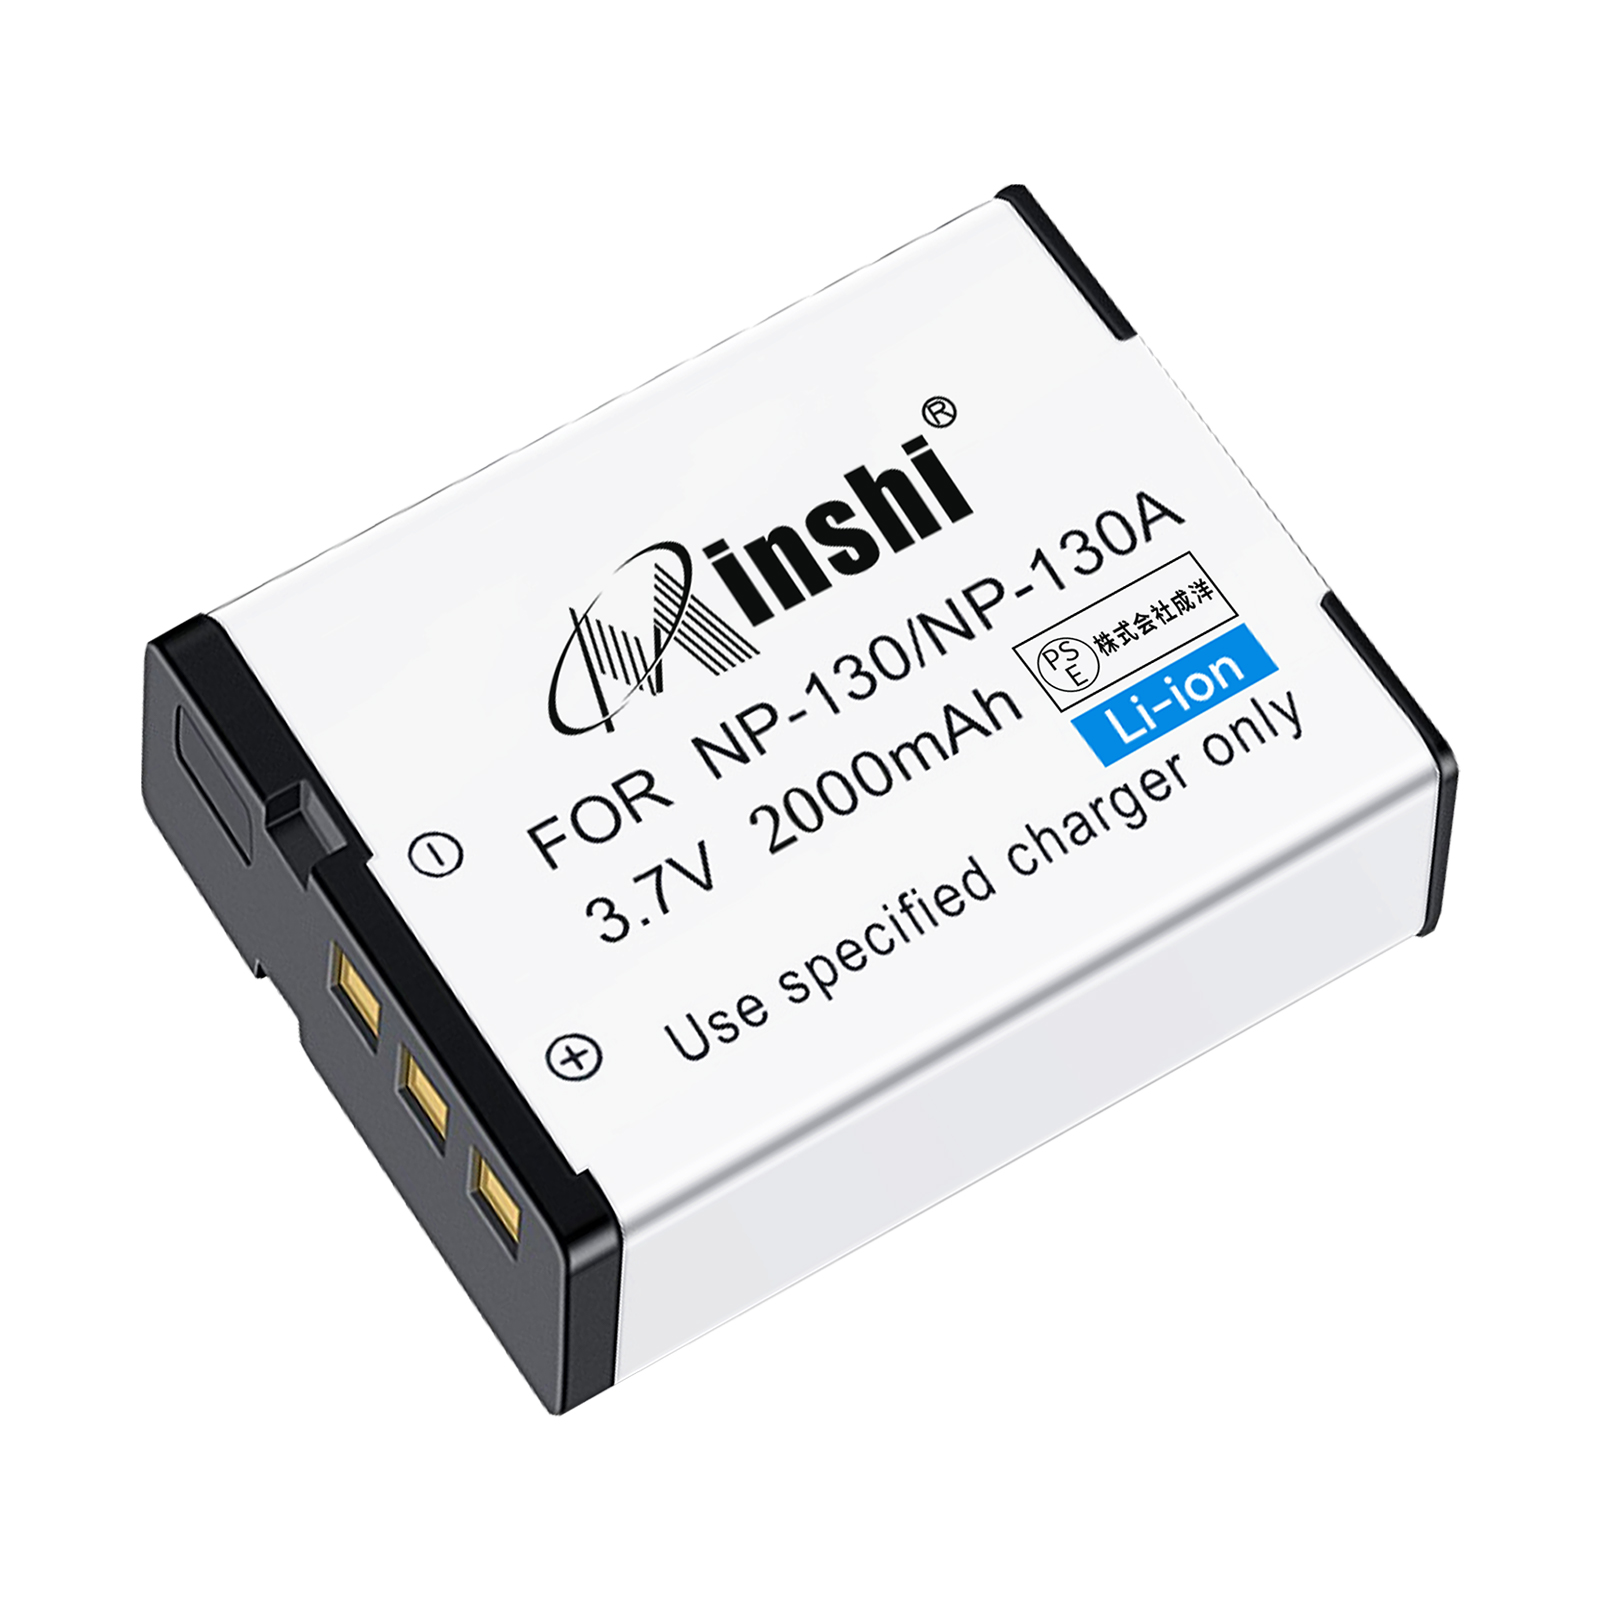 【1年保証】minshi CASIO EX-ZR3000 NP-130【2000mAh 3.7V】PSE認定済 高品質 NP-130/NP-130A互換バッテリー